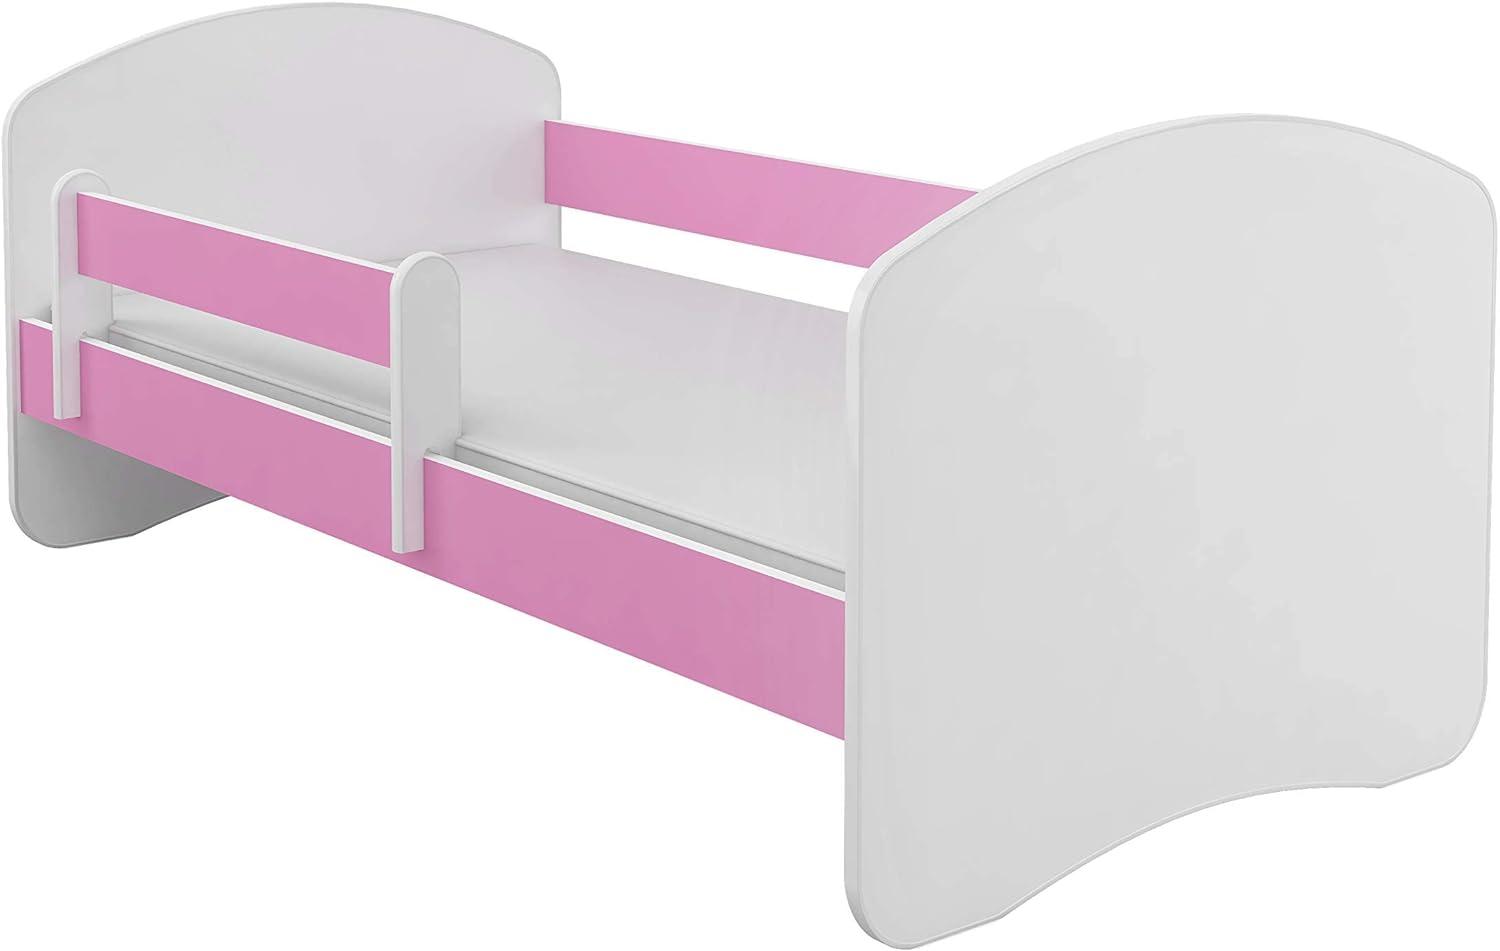 Kinderbett Jugendbett mit einer Schublade und Matratze Weiß ACMA II (140x70 cm, Rosa) Bild 1